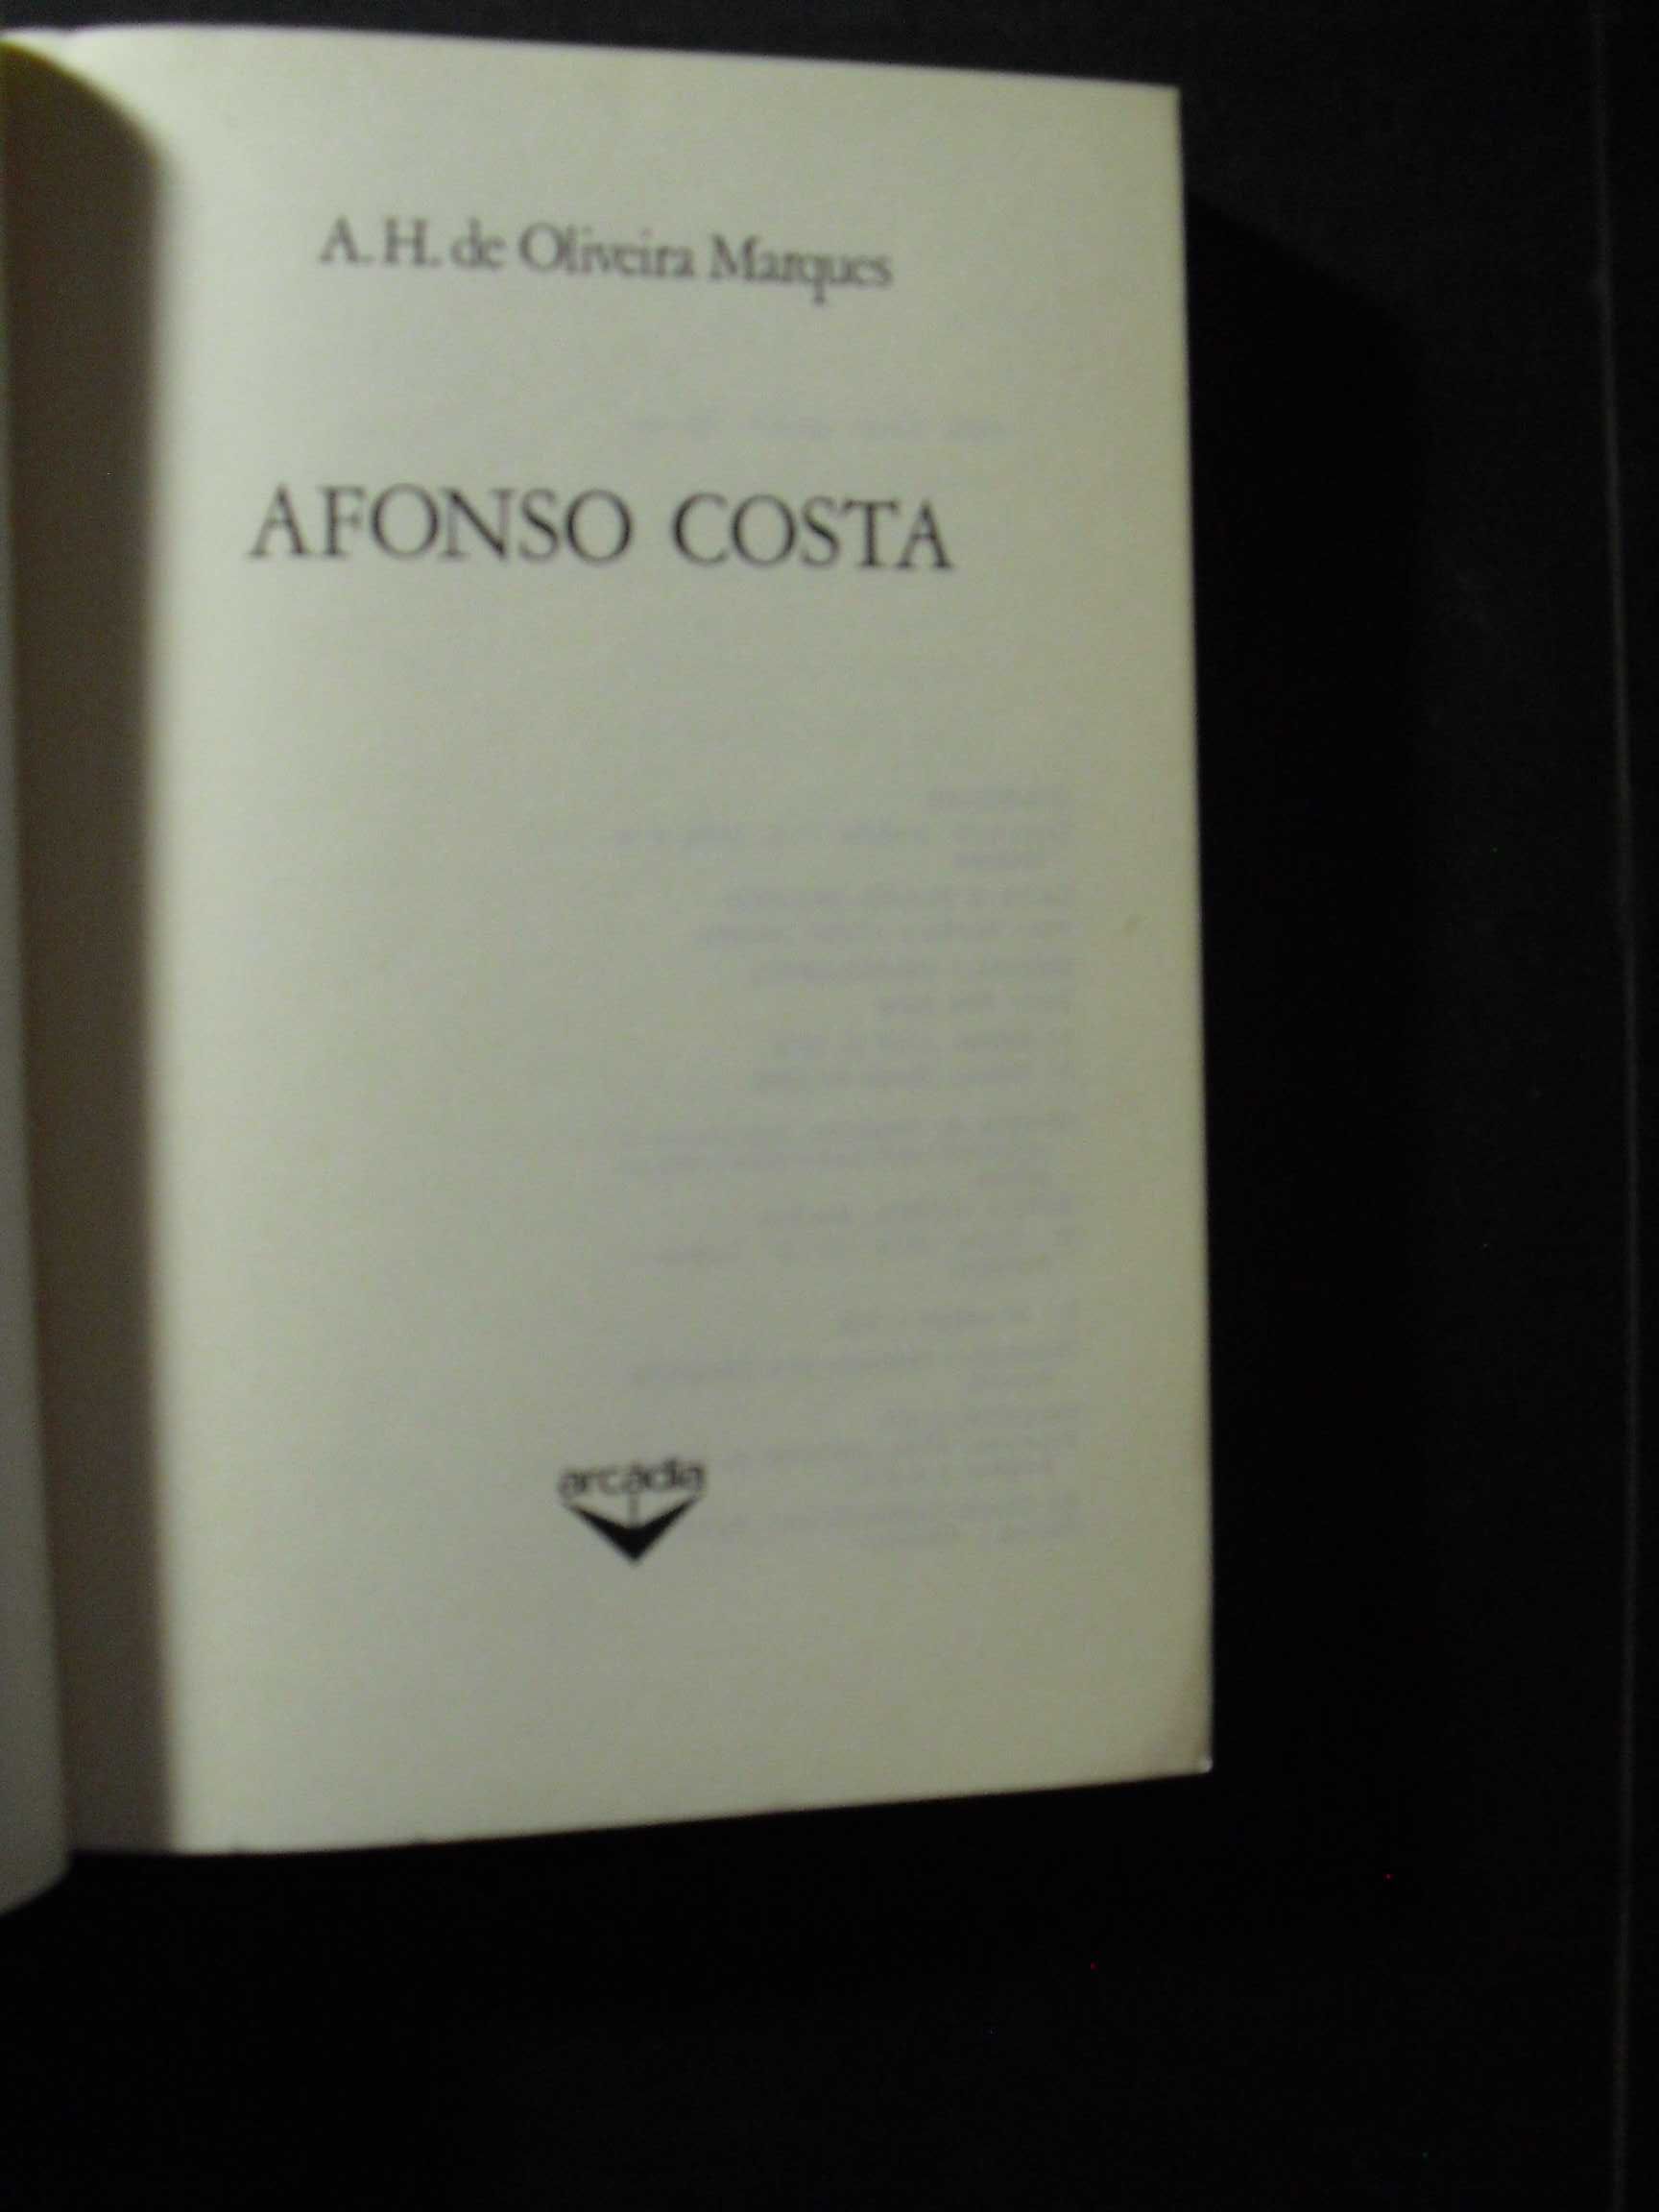 Marques (A.H.de Oliveira);Afonso Costa;